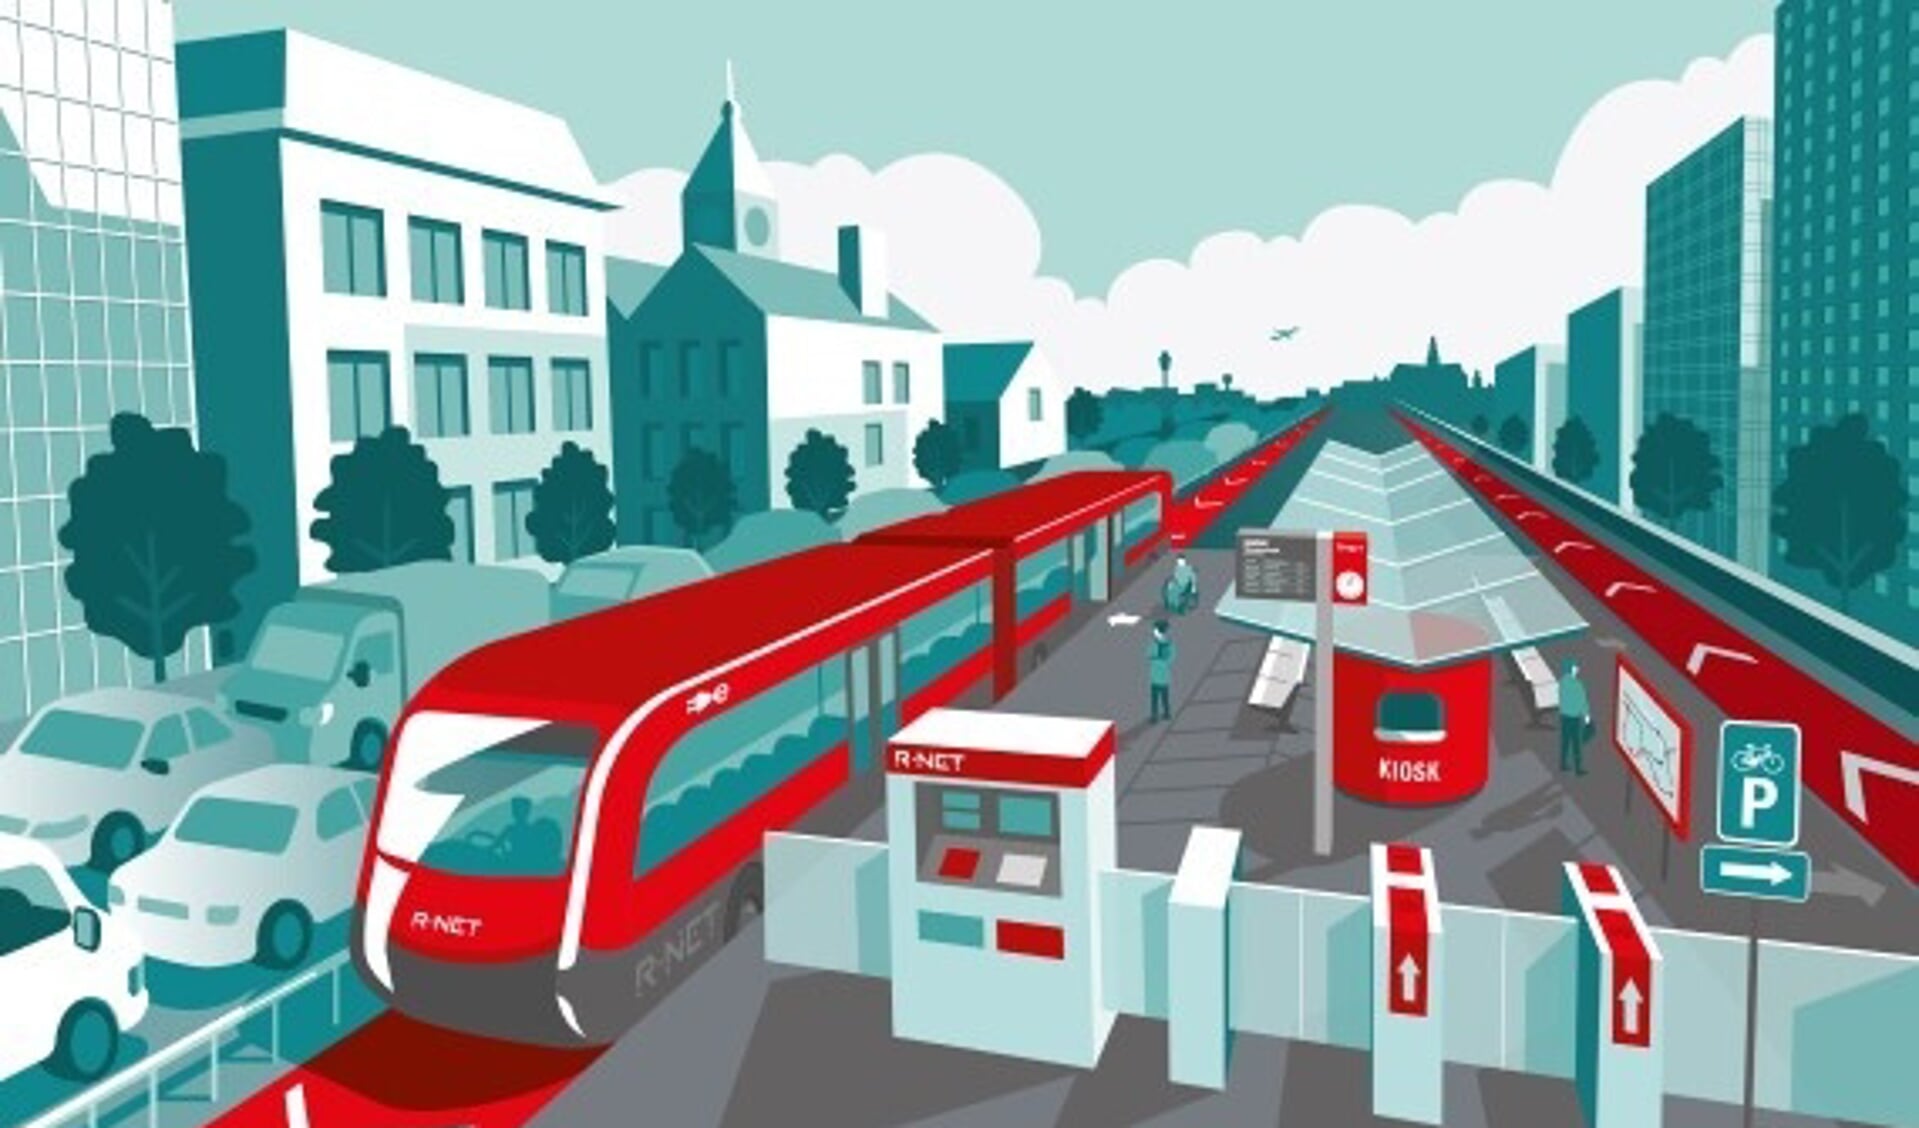 Het openbaar vervoersnetwerk tussen Haarlem, Schiphol en Amsterdam worden versterkt en uitgebreid.